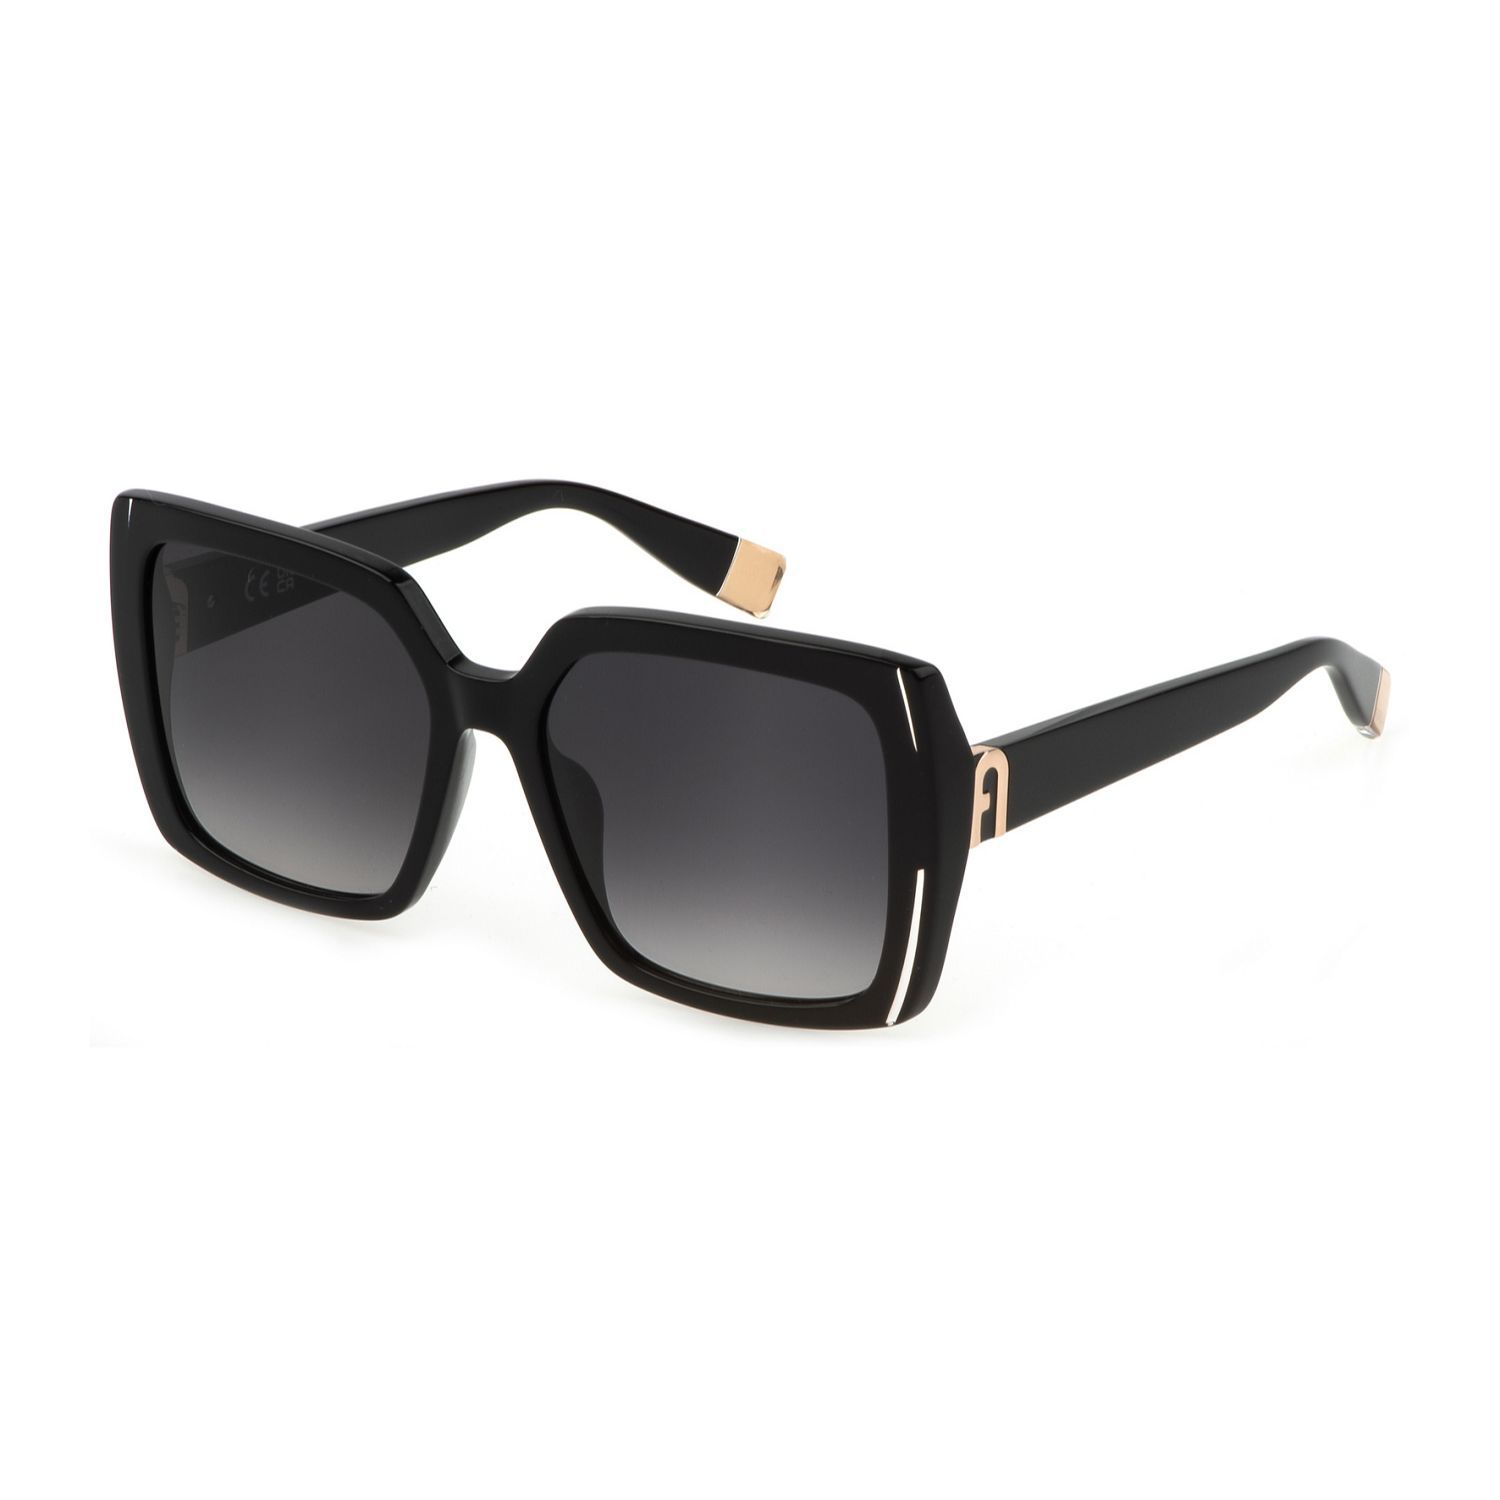 SFU707 Square Sunglasses 0700 - size 56